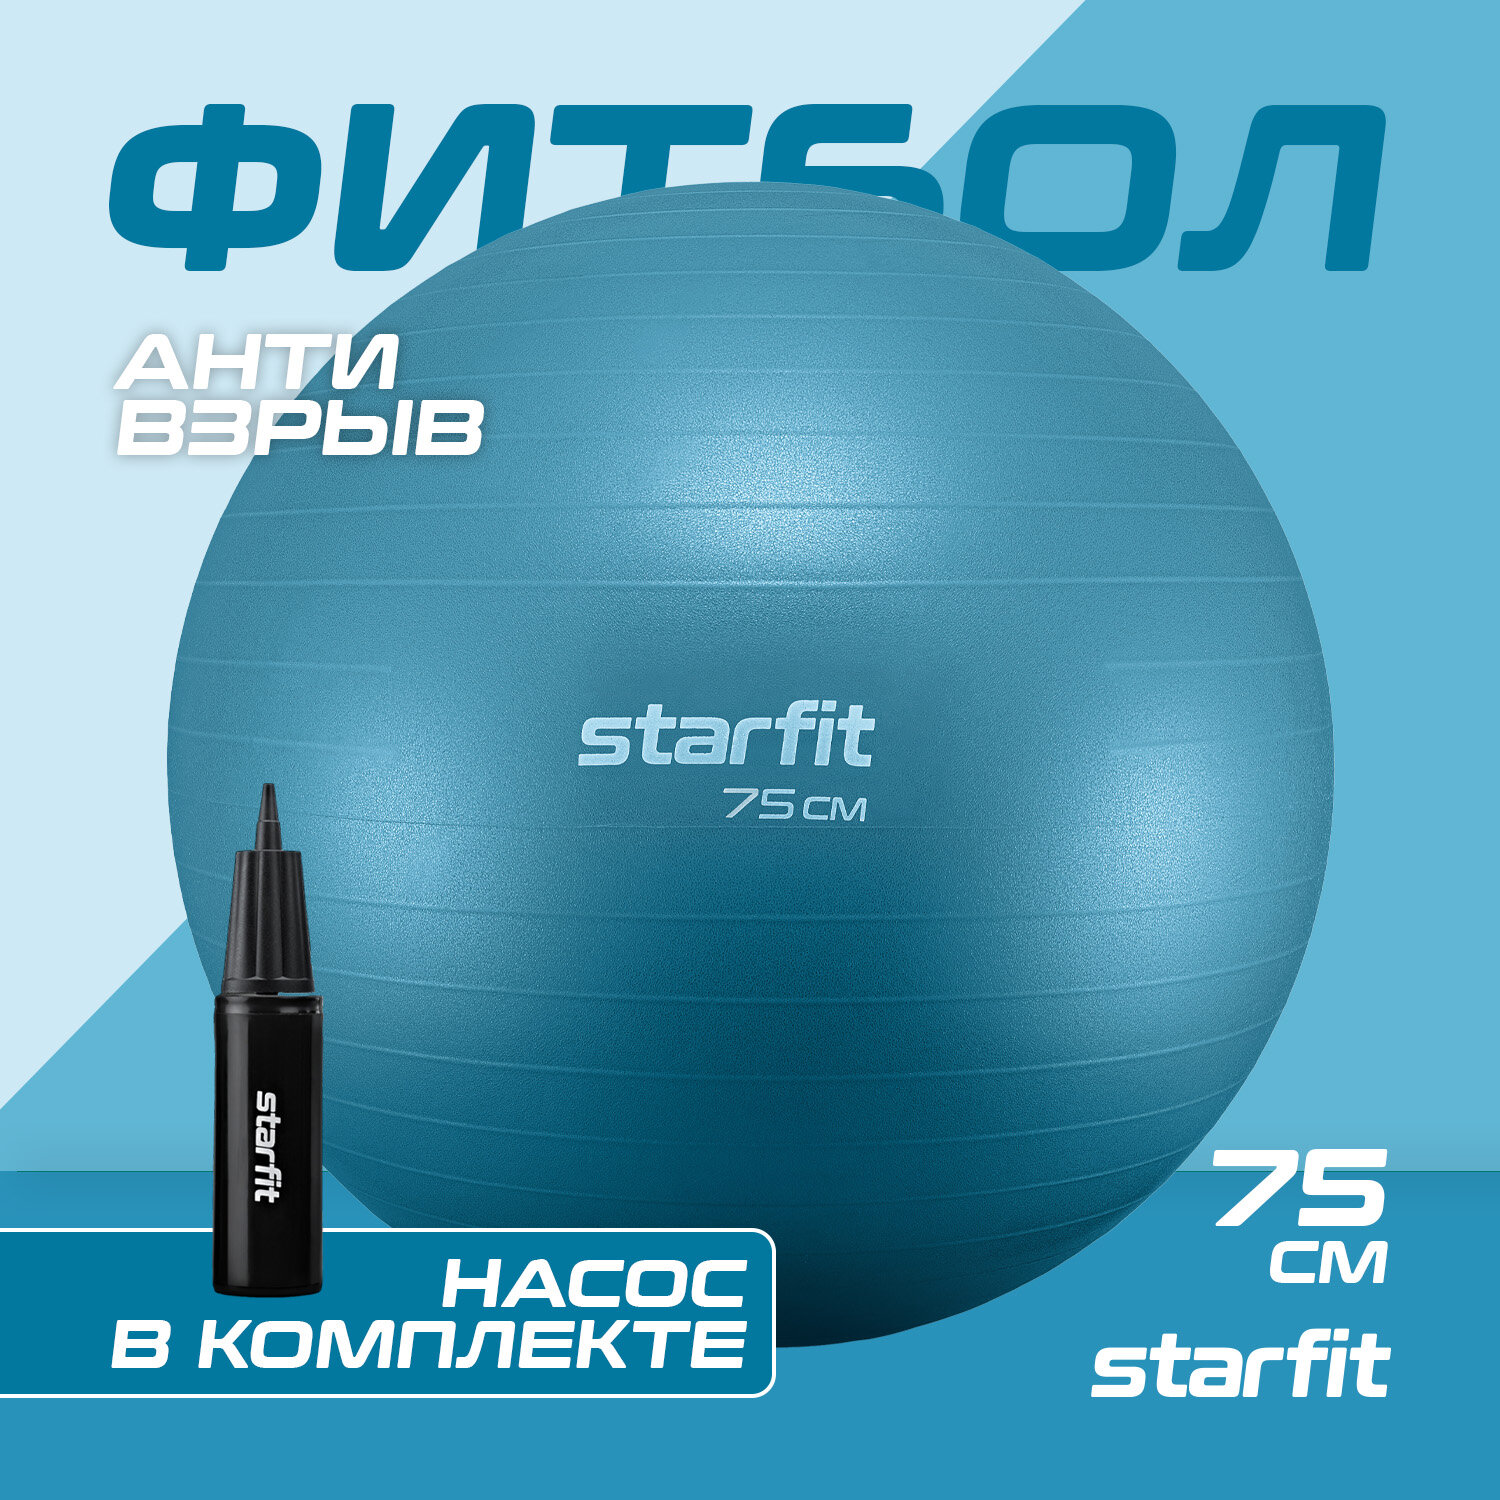 Фитбол STARFIT GB-109 75 см, 1200 гр, антивзрыв, с ручным насосом, синий пастель